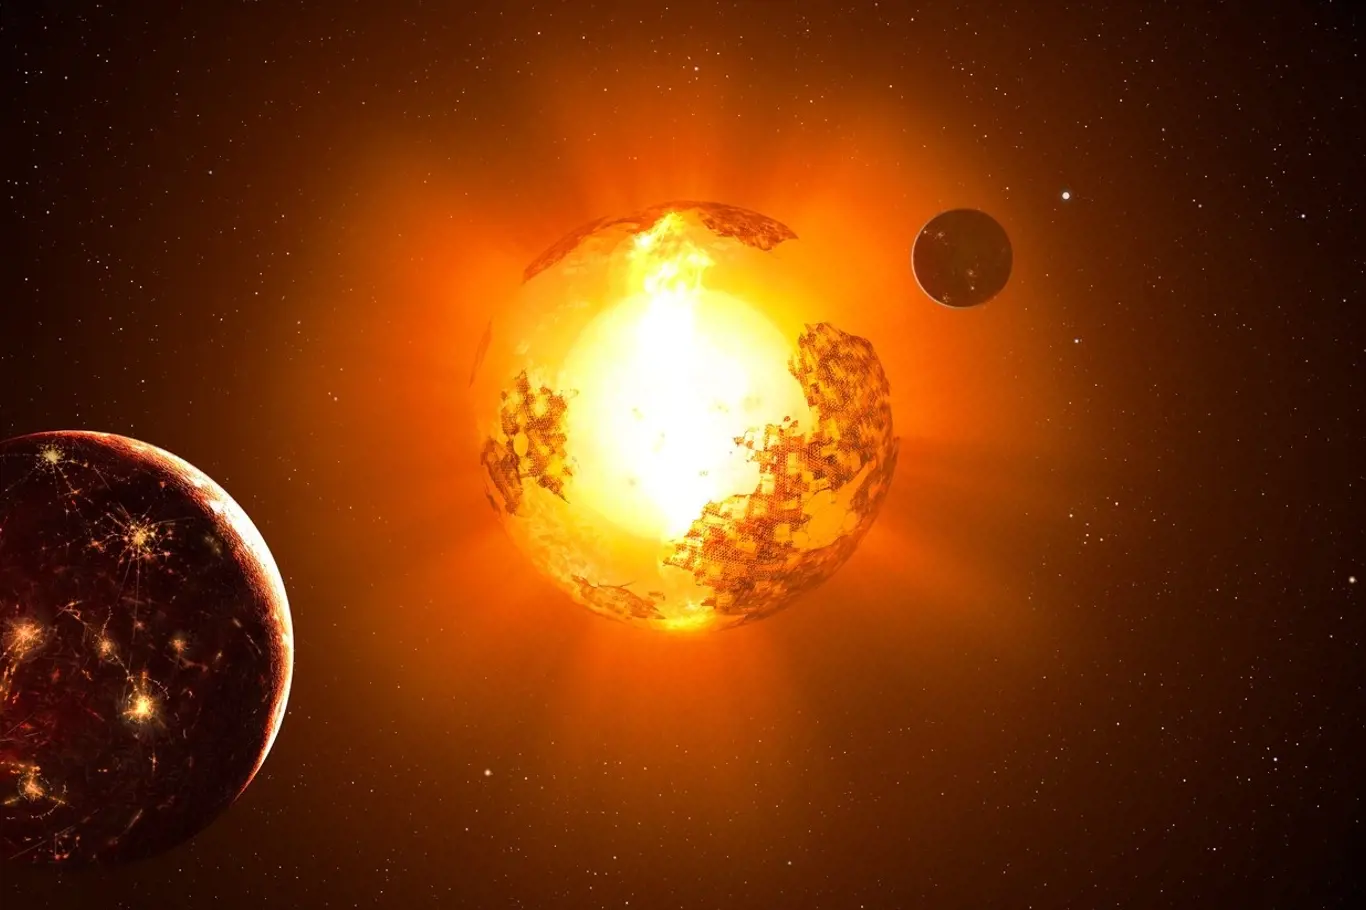 Obíhá kolem Tabbyiny hvězdy obyvatelná planeta?